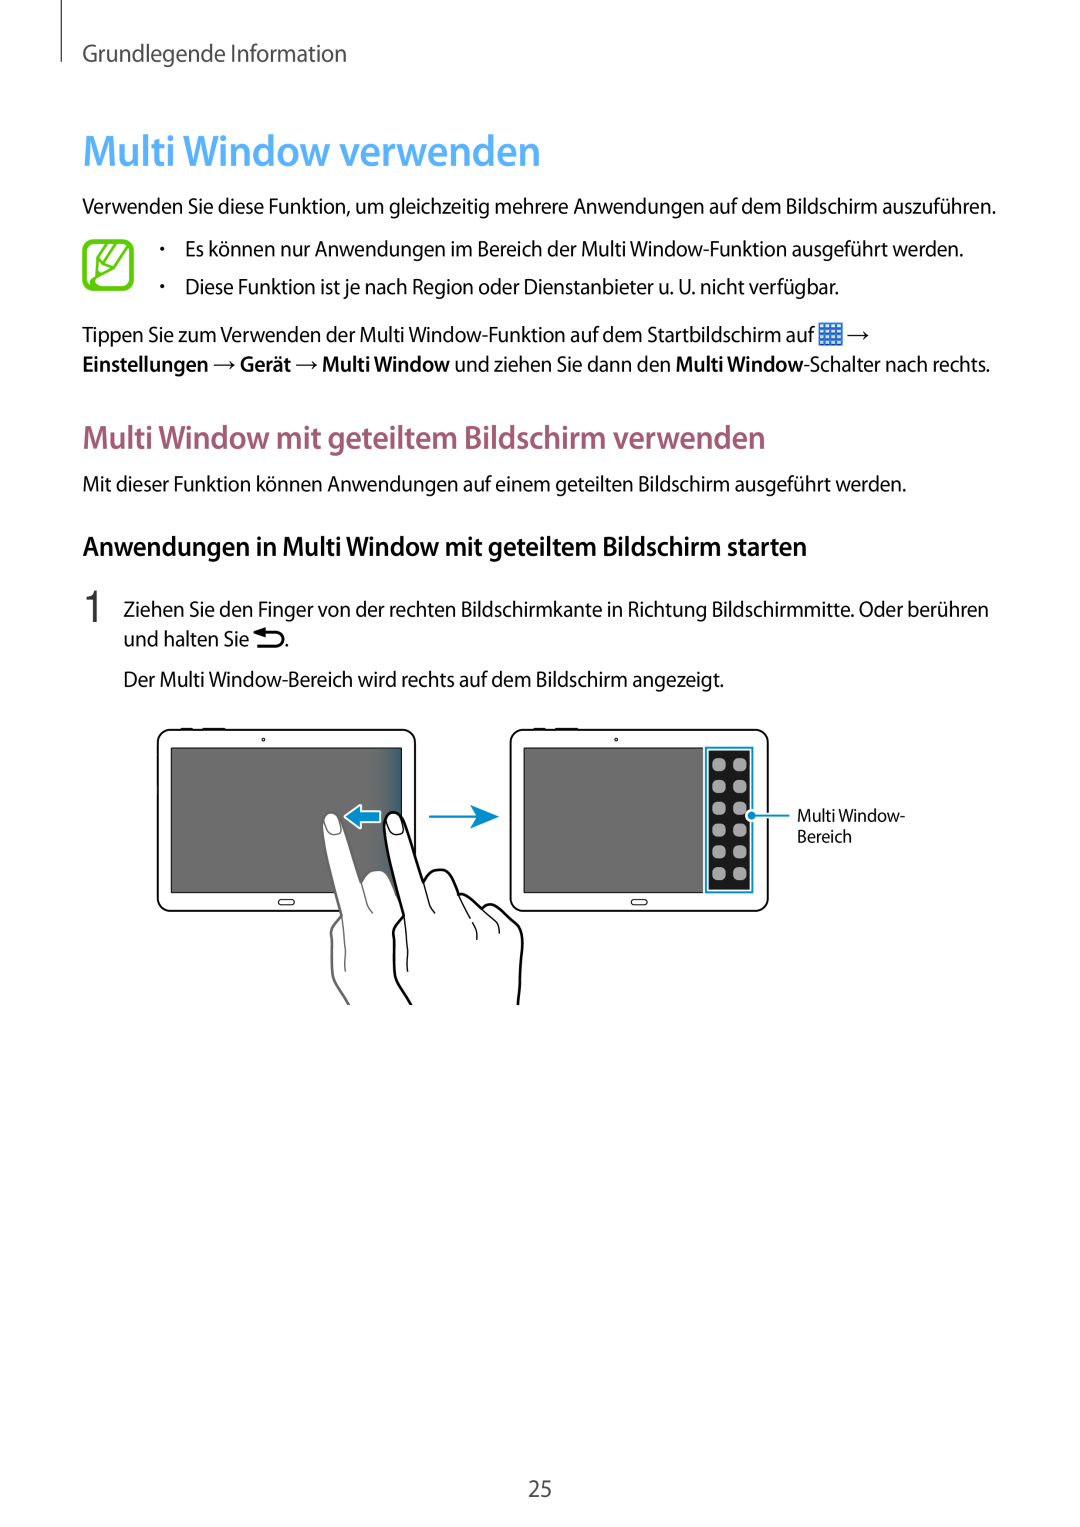 Samsung SM-P6000ZWADBT Multi Window verwenden, Multi Window mit geteiltem Bildschirm verwenden, Grundlegende Information 